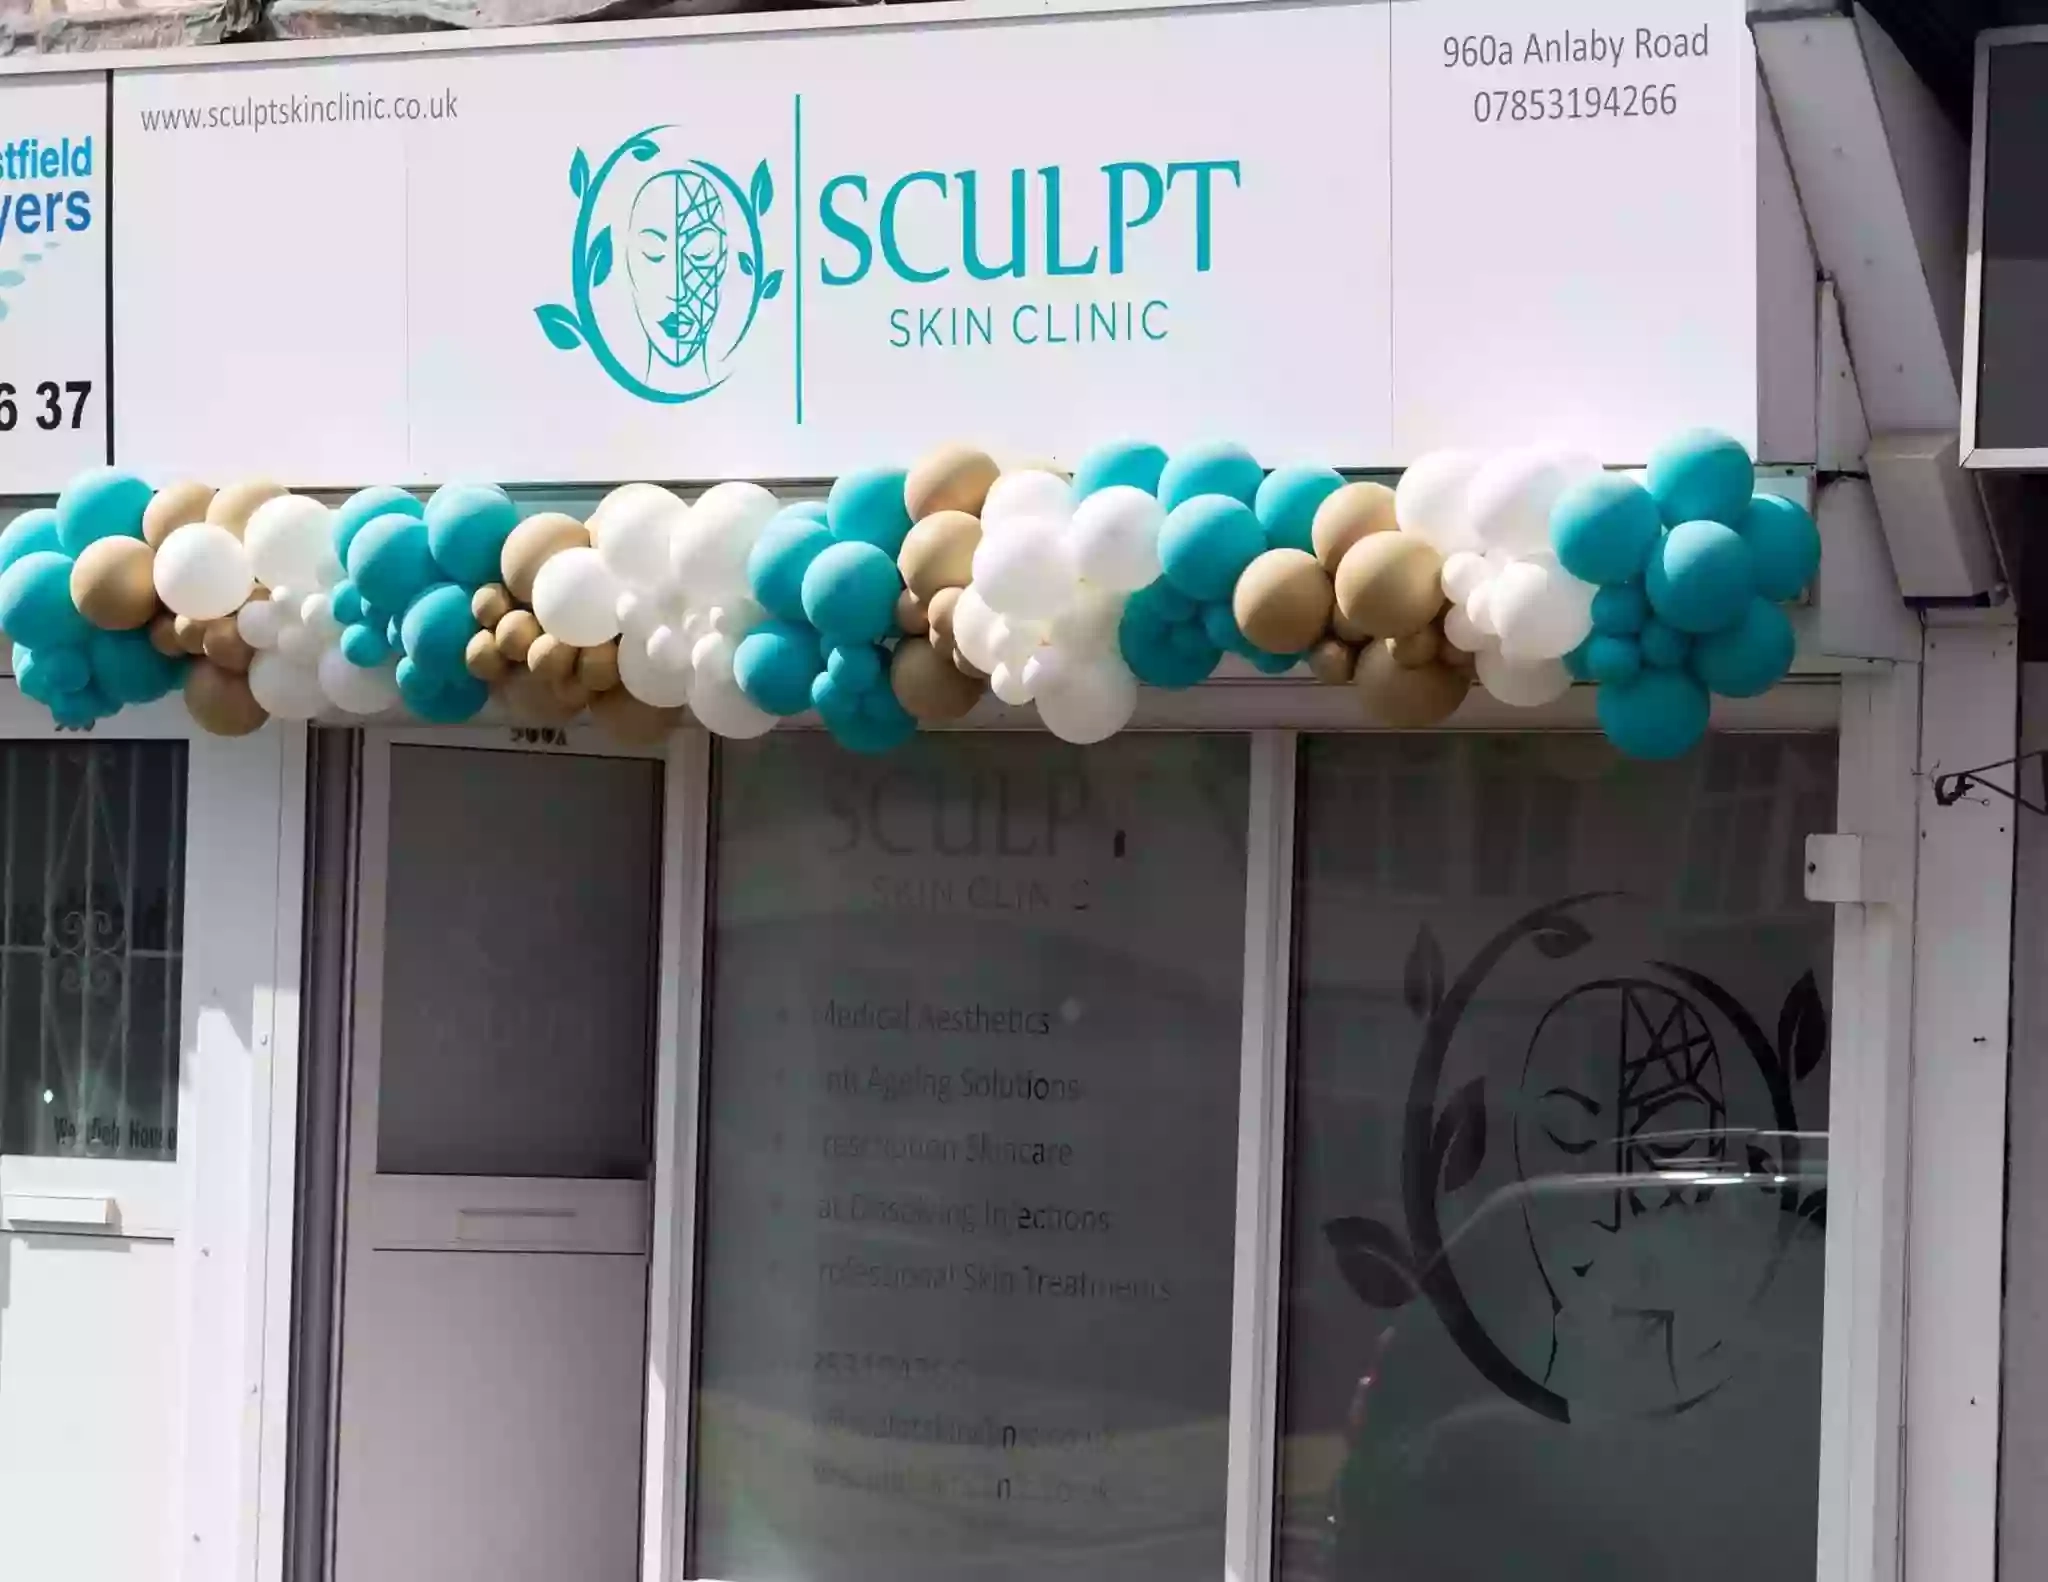 Sculpt Skin Clinic